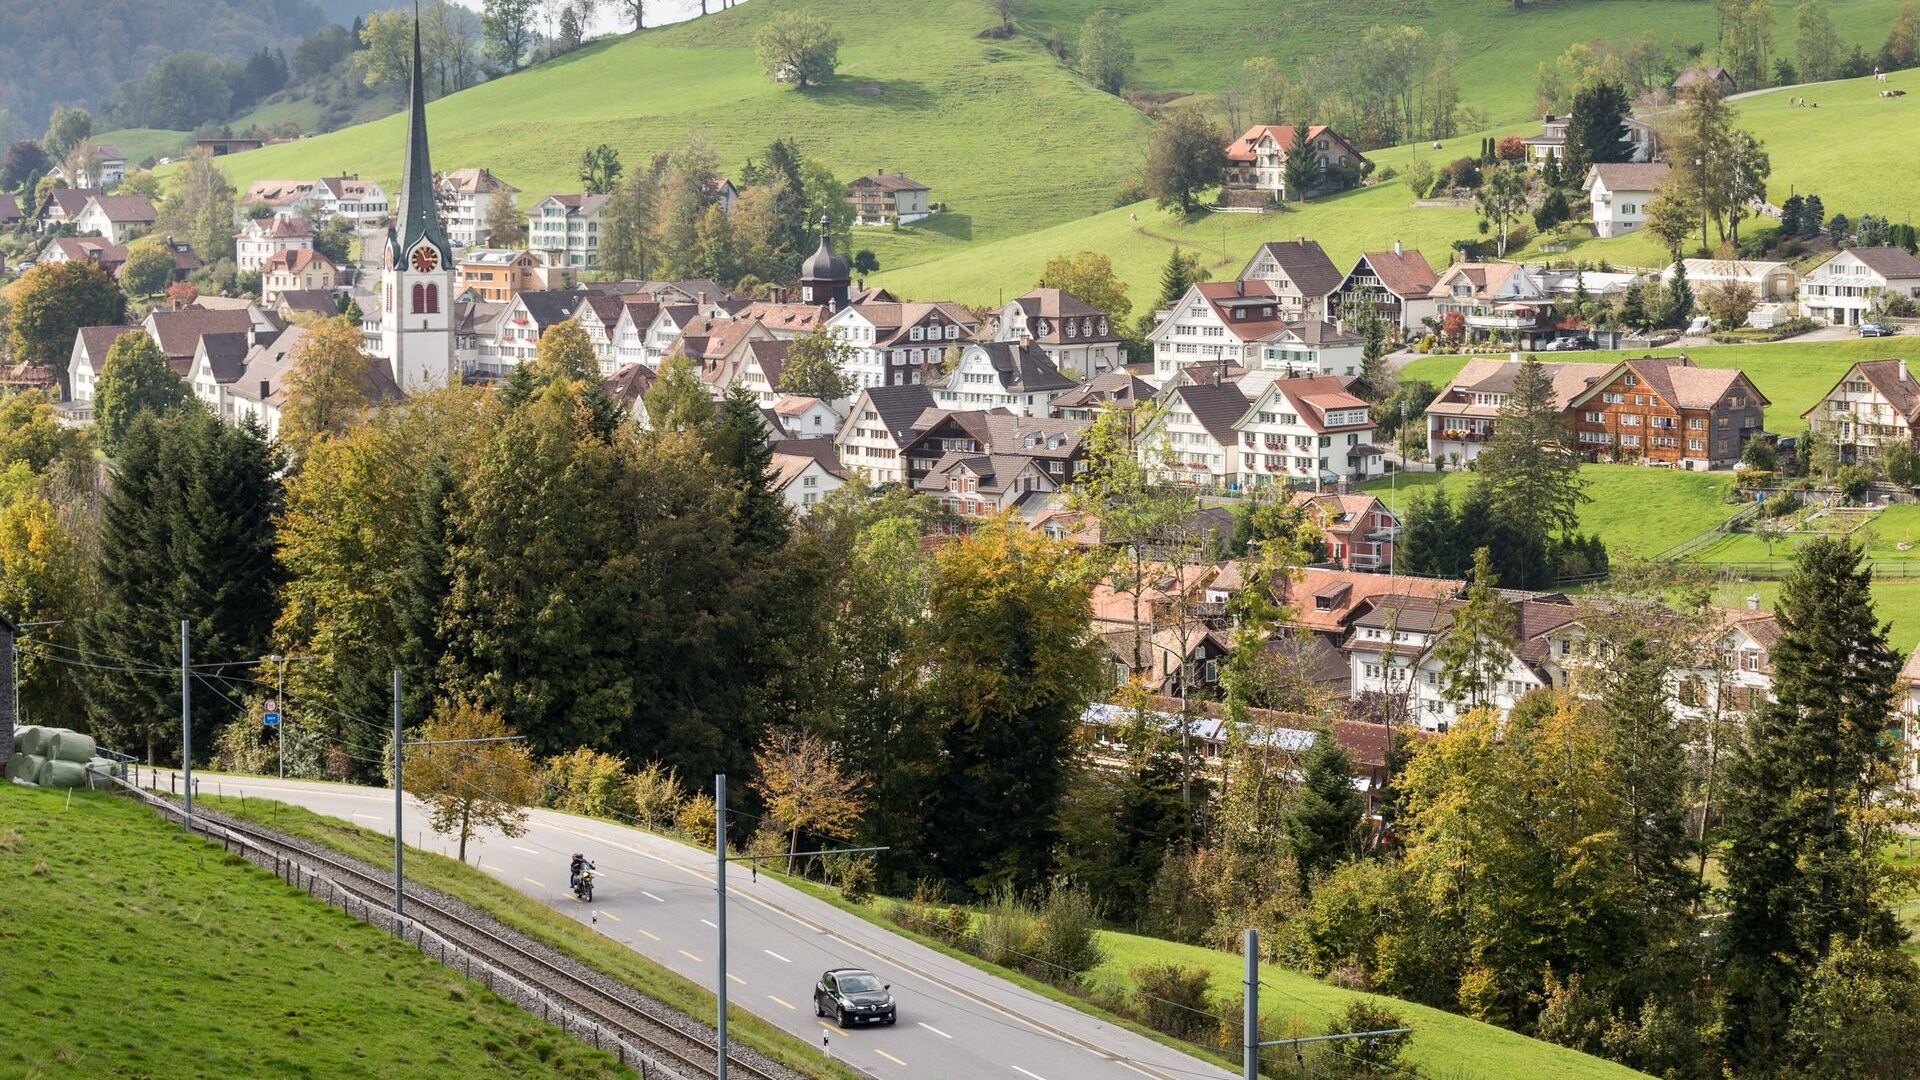 Μια επισκόπηση του δήμου Gais στο Appenzell Ausserrhoden